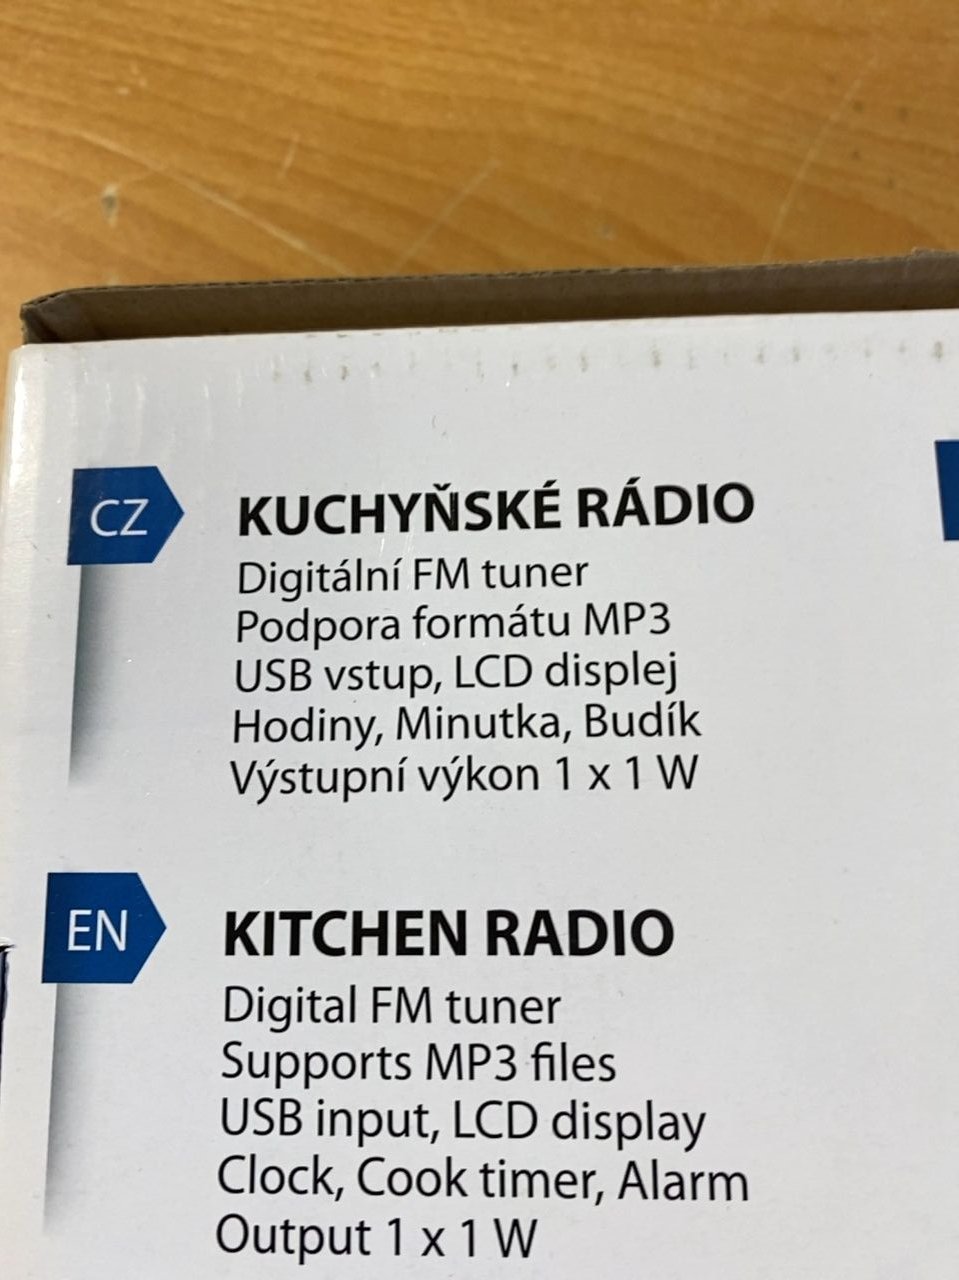 Kuchyňské rádio Hyundai KR 815 PLL U